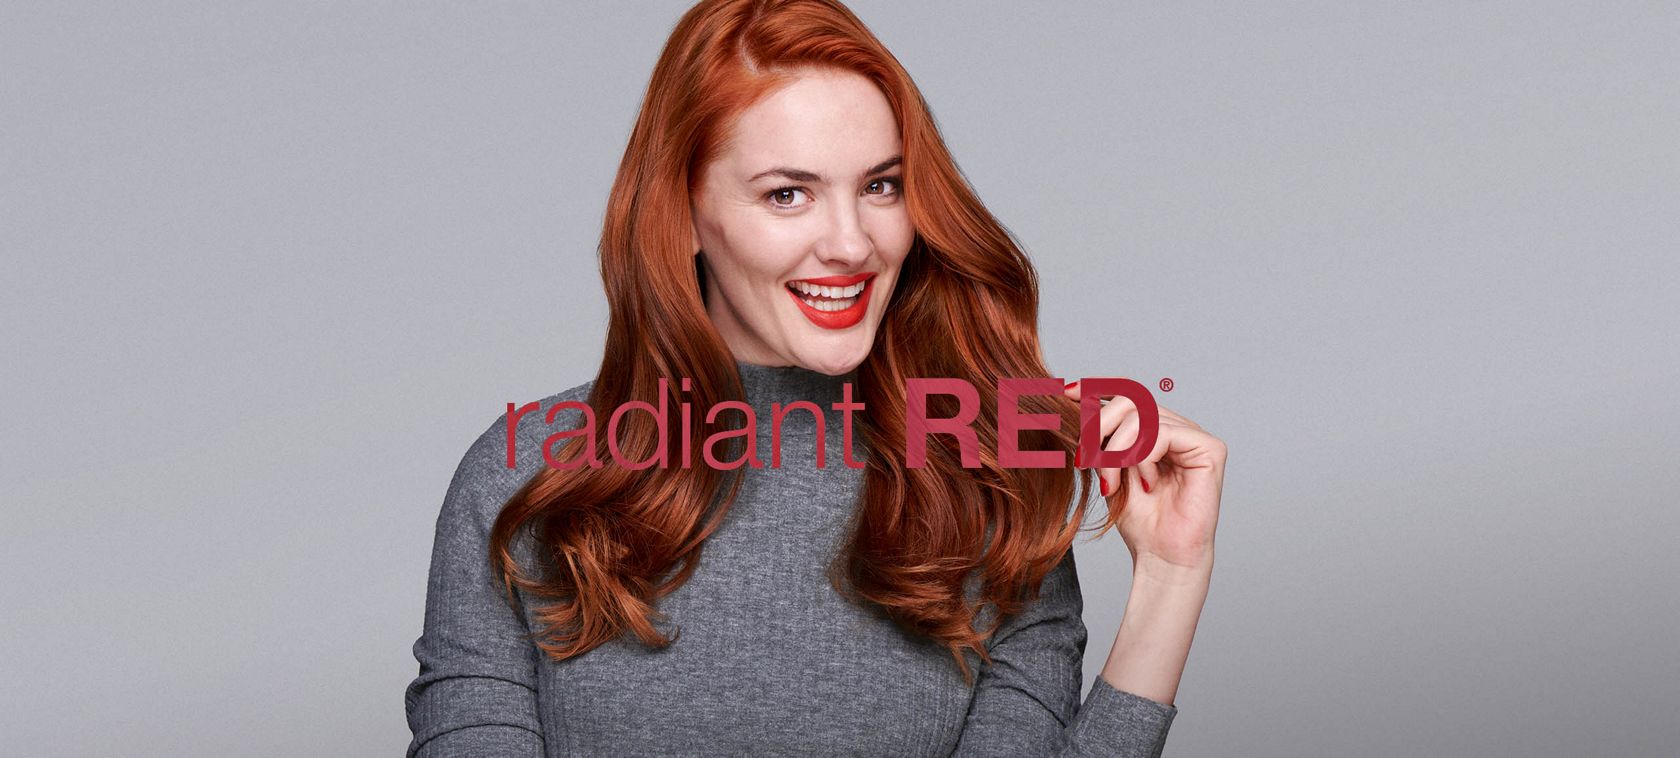 Radiant Red Hair Care John Frieda